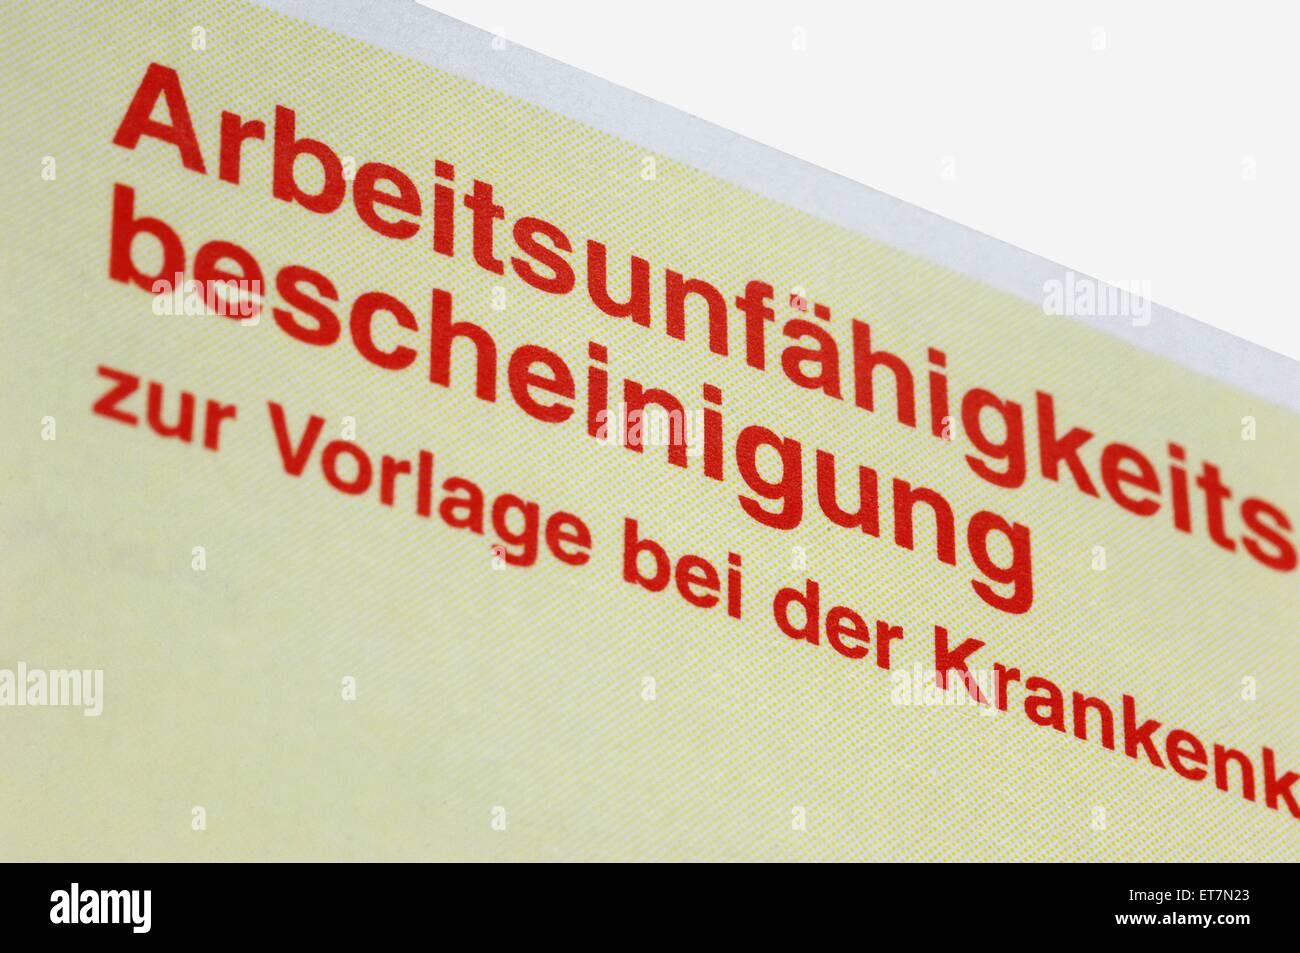 Arbeitsunfaehigkeitsbescheinigung zur Vorlage bei der Krankenkasse, Deutschland | Certificat d'invalidité, Allemagne Banque D'Images